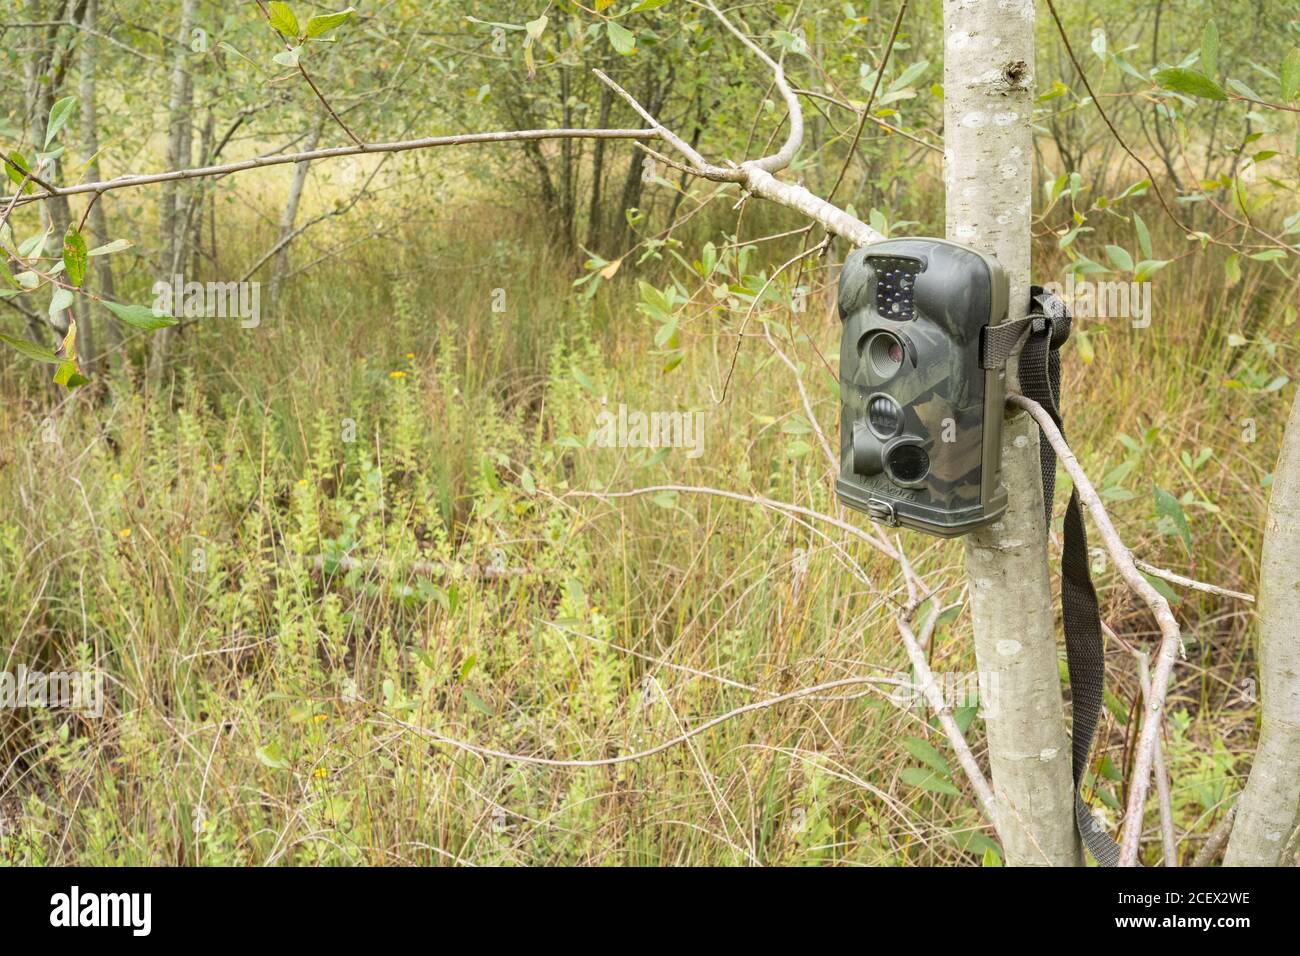 Caméra de randonnée ou piège de caméra installé dans un arbre pour surveiller et photographier la faune d'une zone humide, au Royaume-Uni Banque D'Images